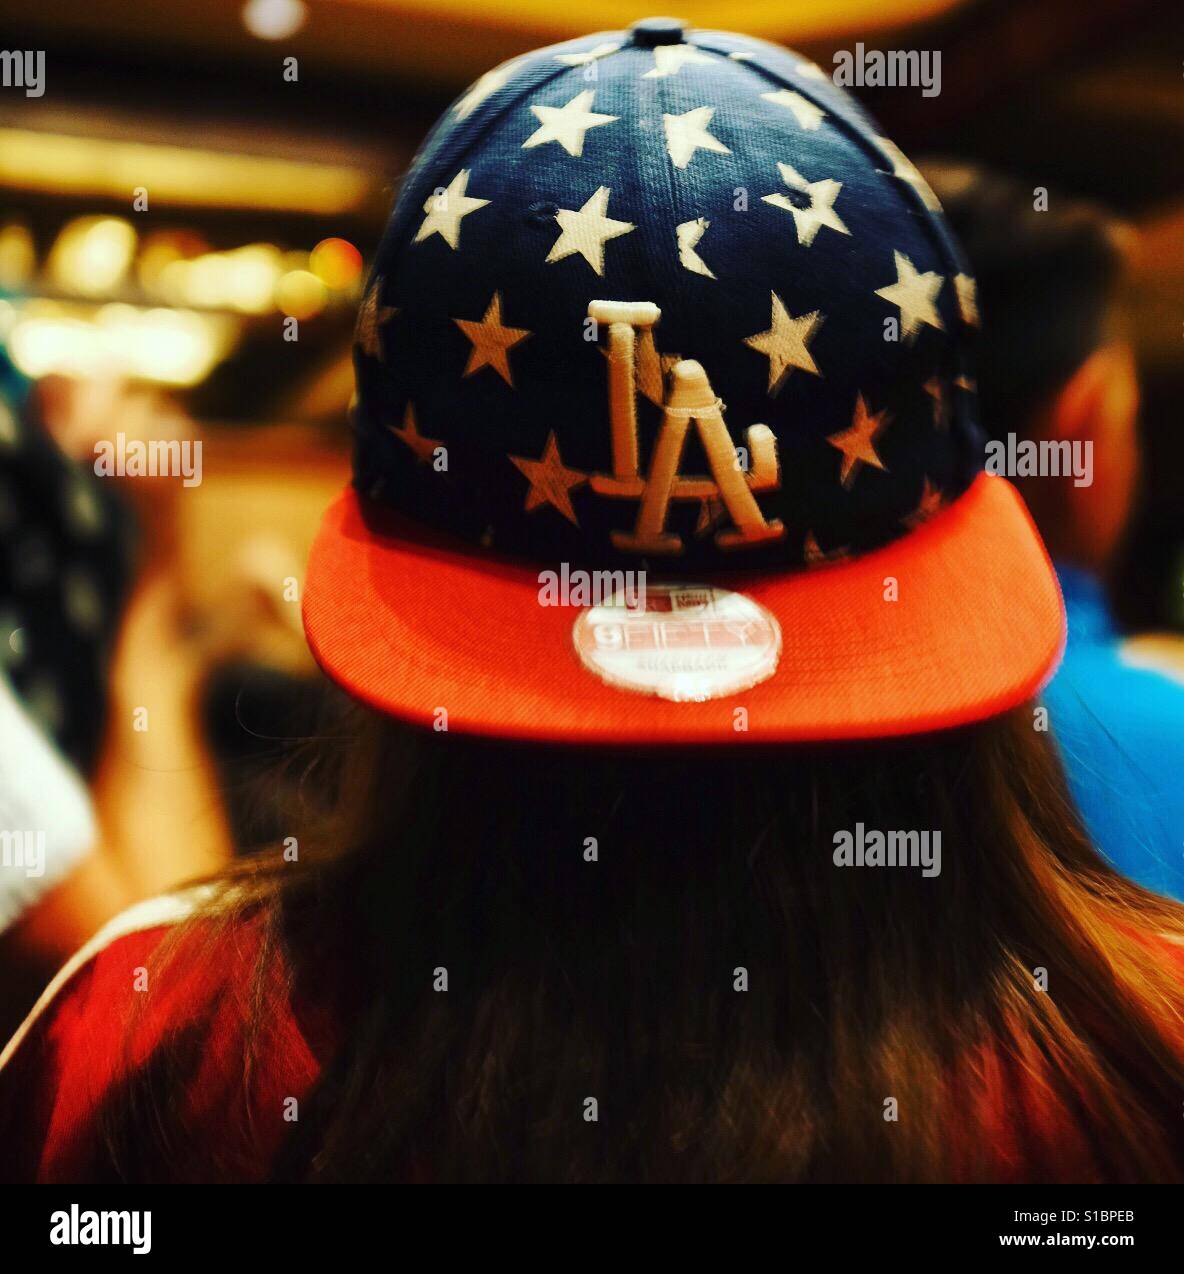 Mädchen mit langen Haaren tragen eine zurück zur vorderen LA-Baseball-Cap  mit Sternen Stockfotografie - Alamy